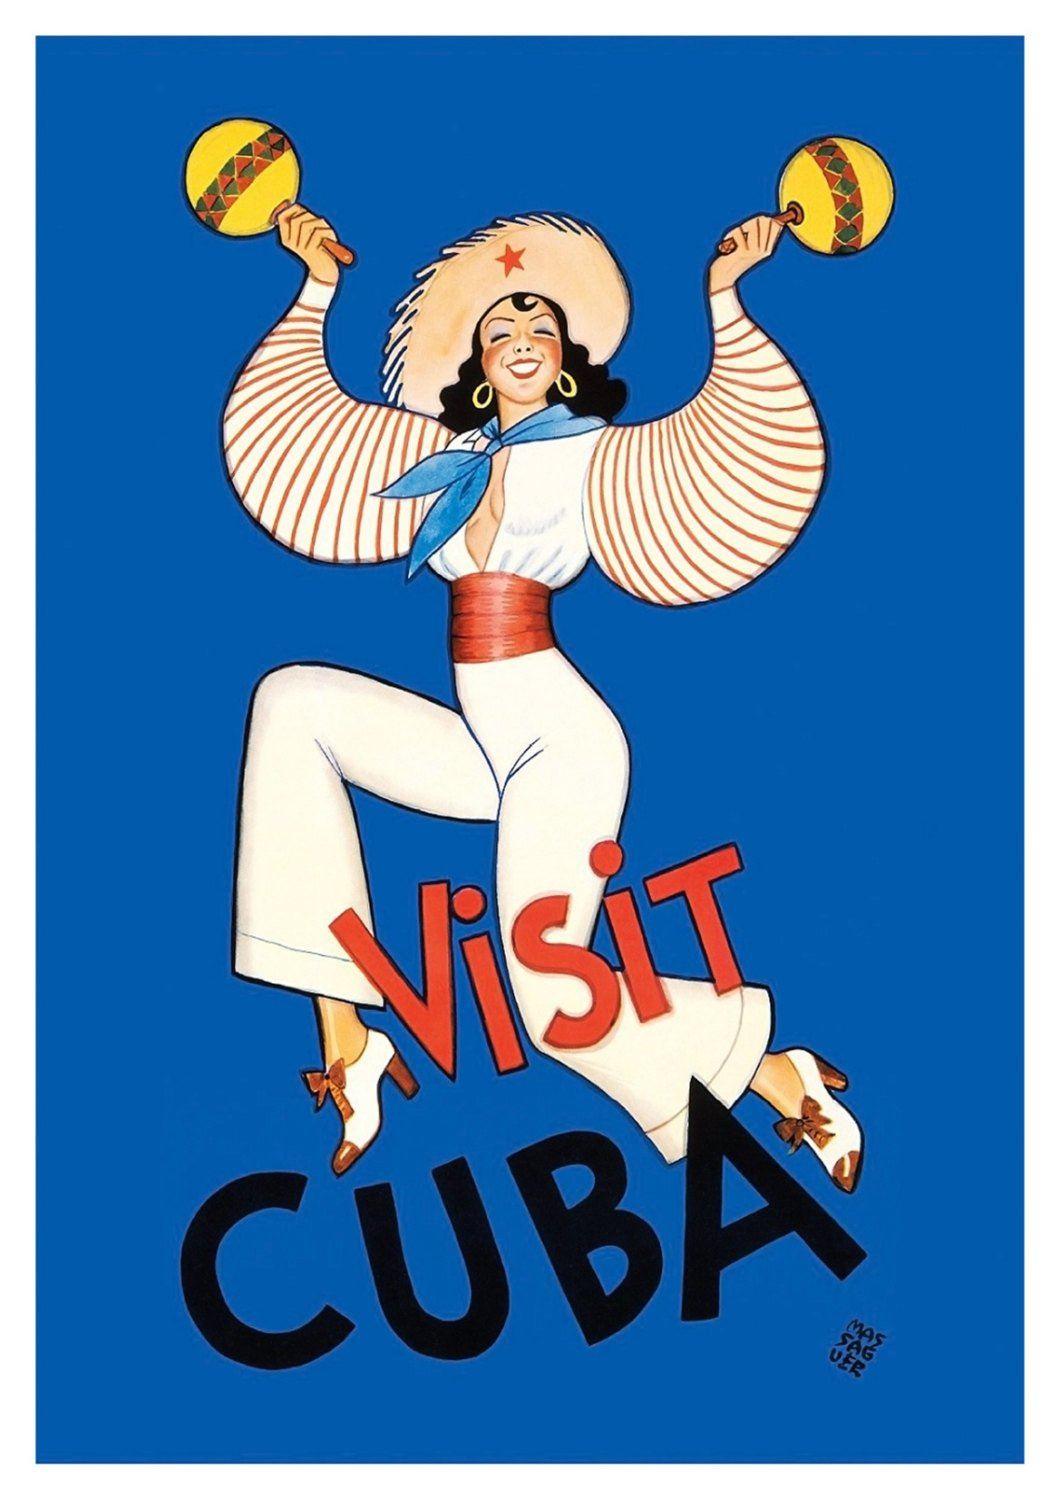 VISIT CUBA POSTER: Blue Dancing Girl Print - Pimlico Prints